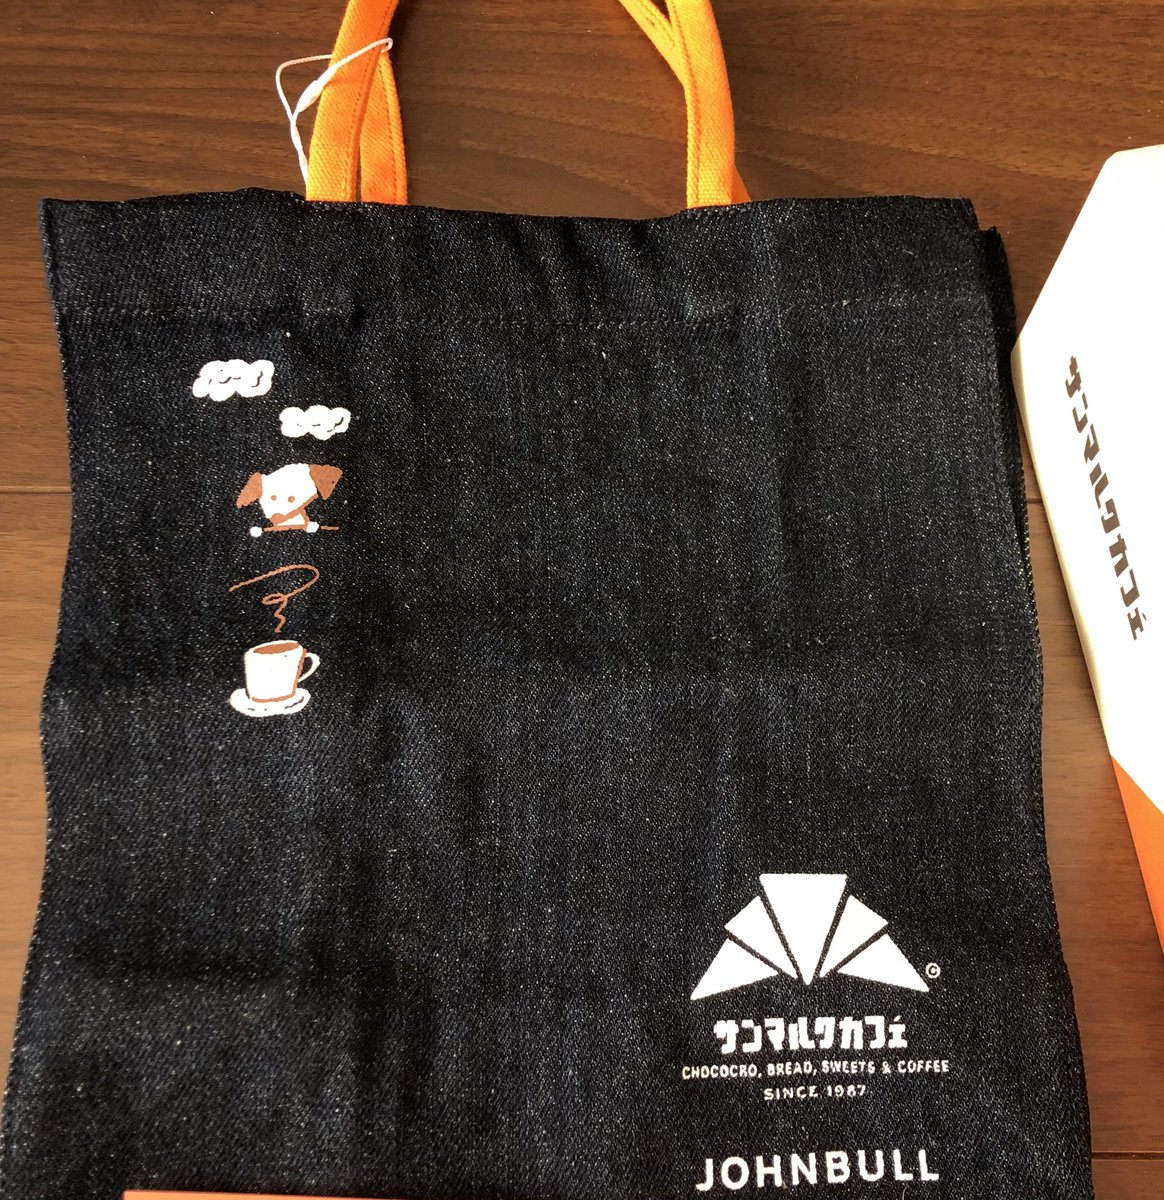 サービス JOHNBULL × サンマルクカフェ コラボ オリジナルミニバッグ